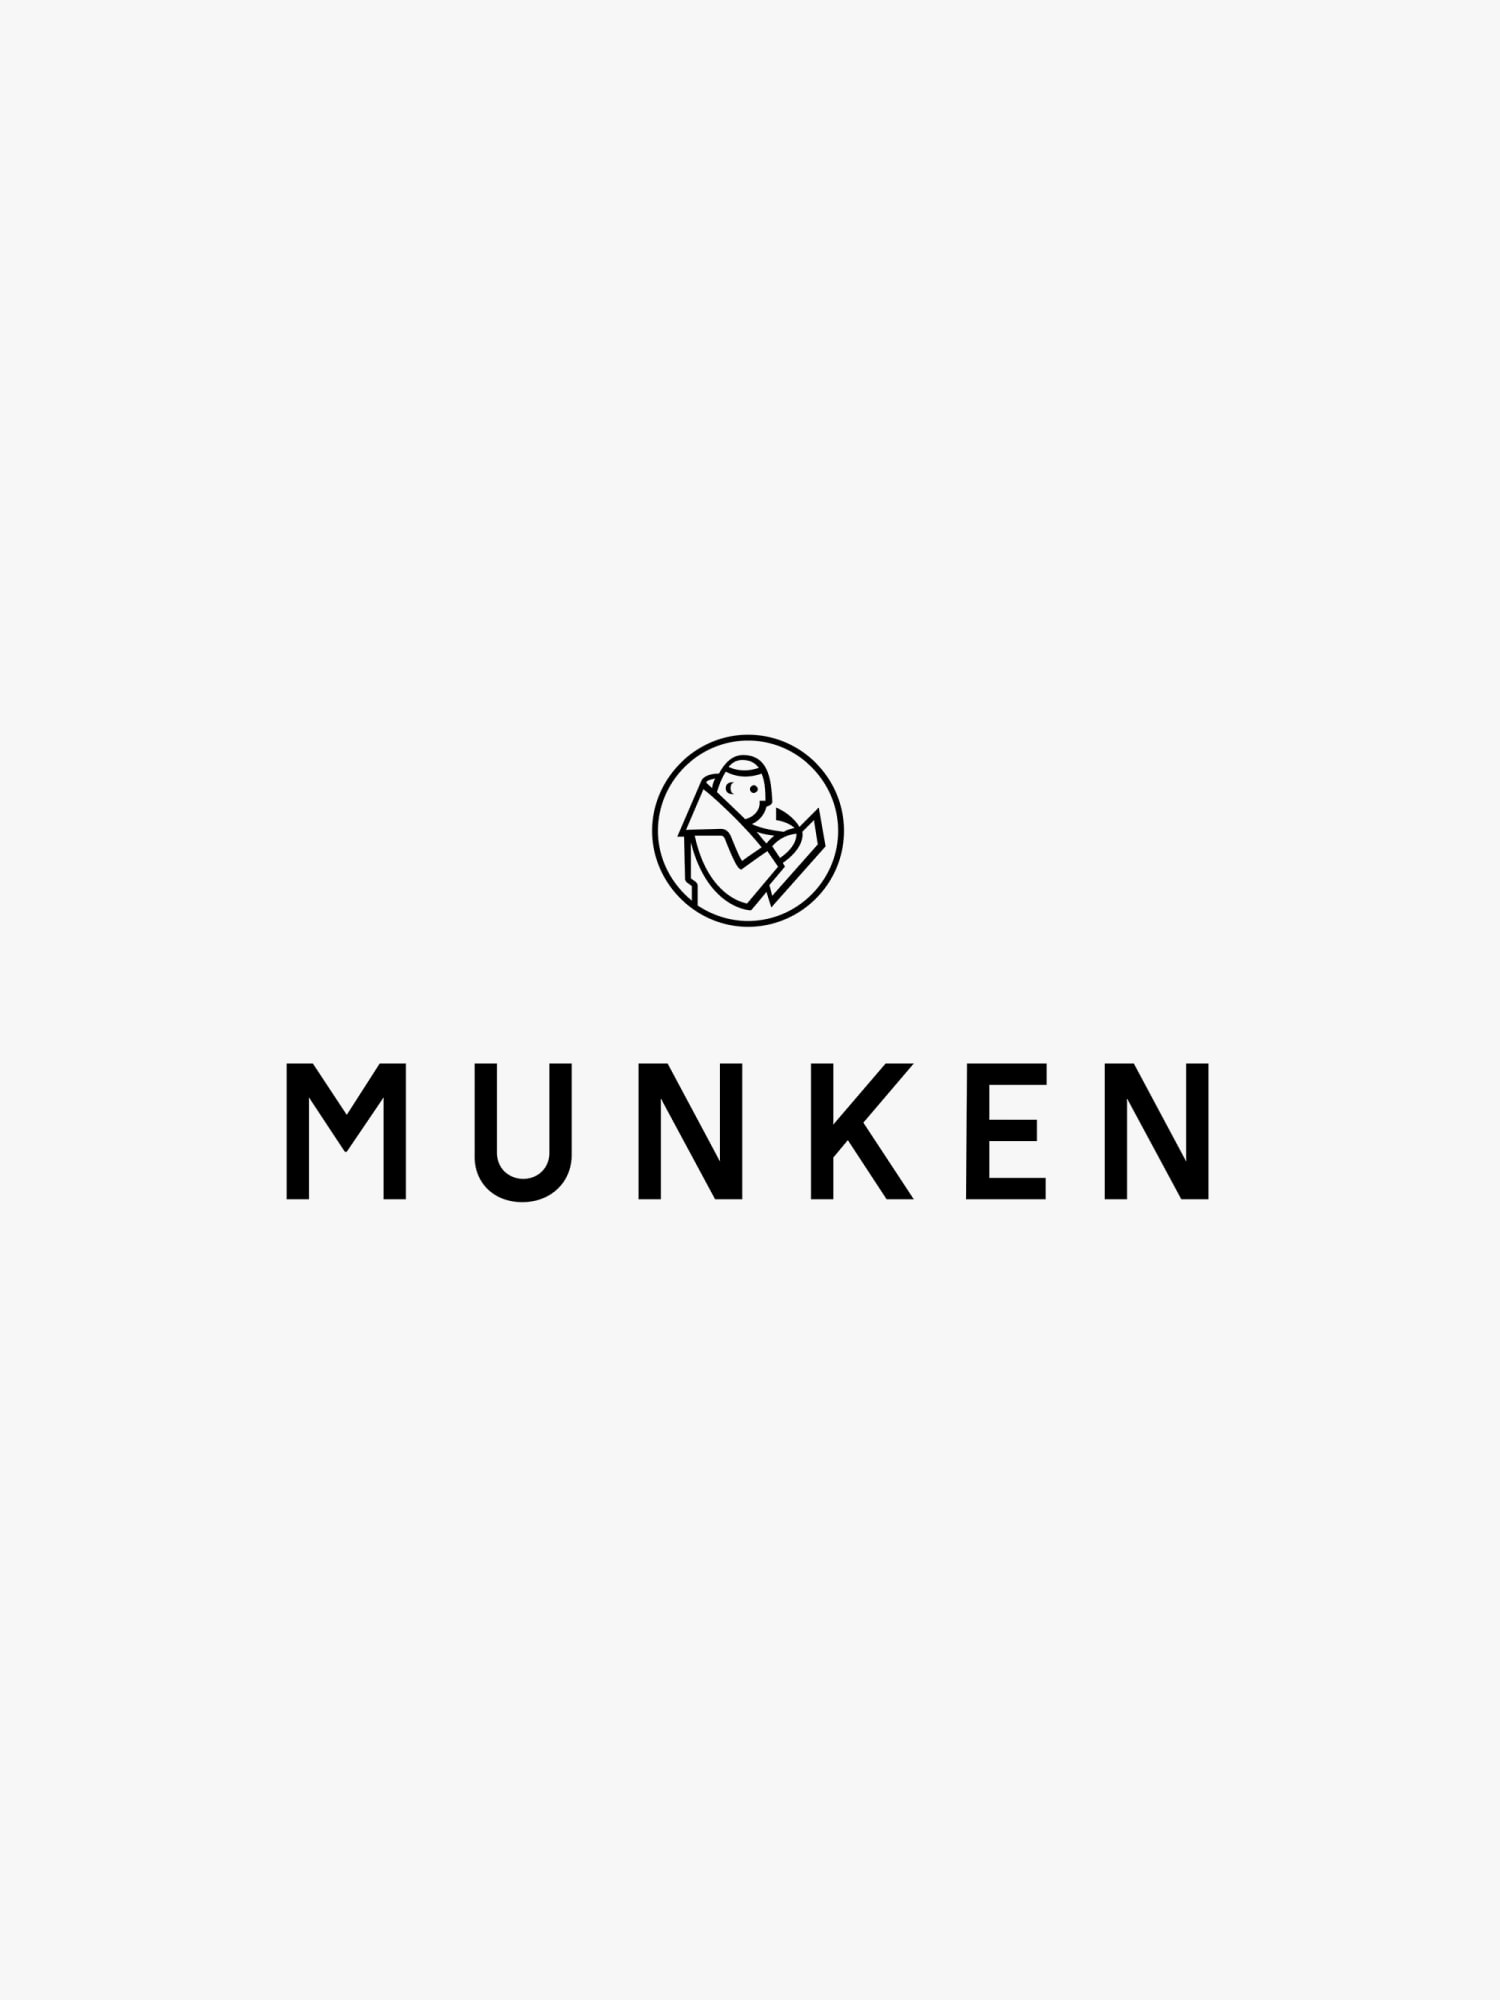 Munken Logo